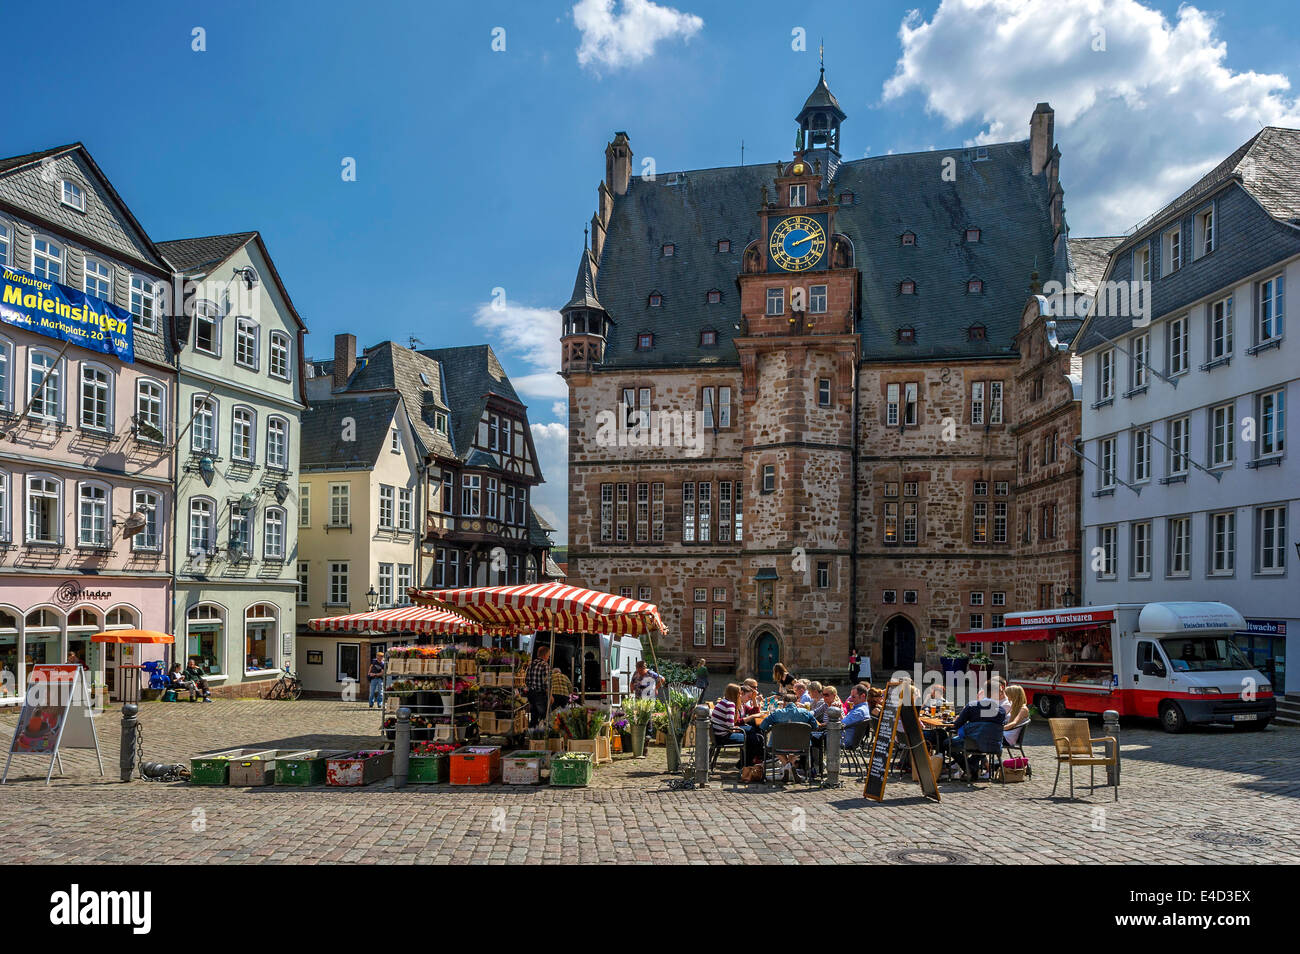 Historisches Rathaus, Marktplatz, Altstadt, Marburg, Hessen, Deutschland Stockfoto